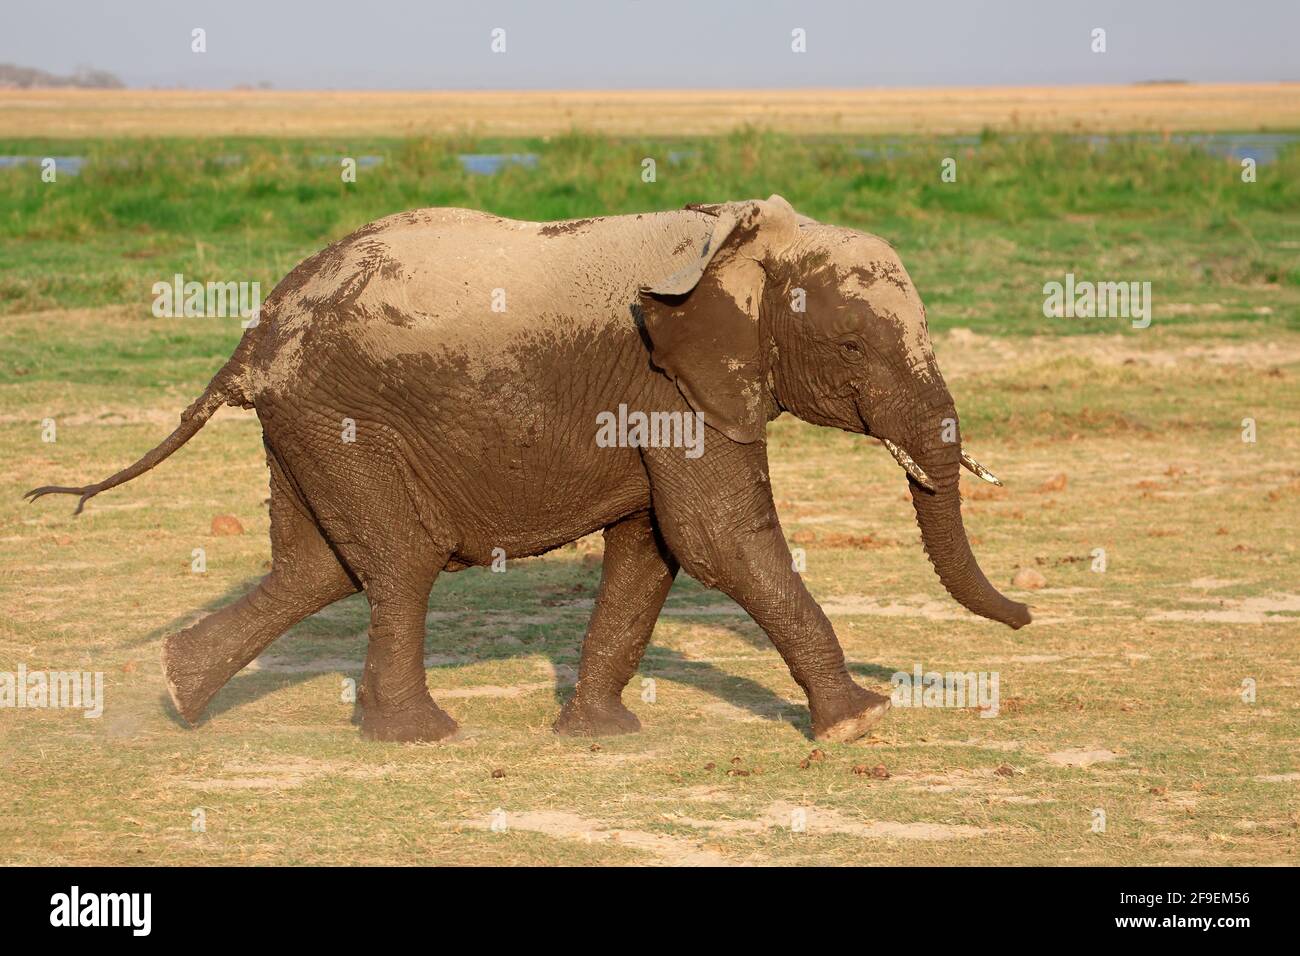 Running African elephant (Loxodonta africana), Amboseli National Park, Kenya Stock Photo